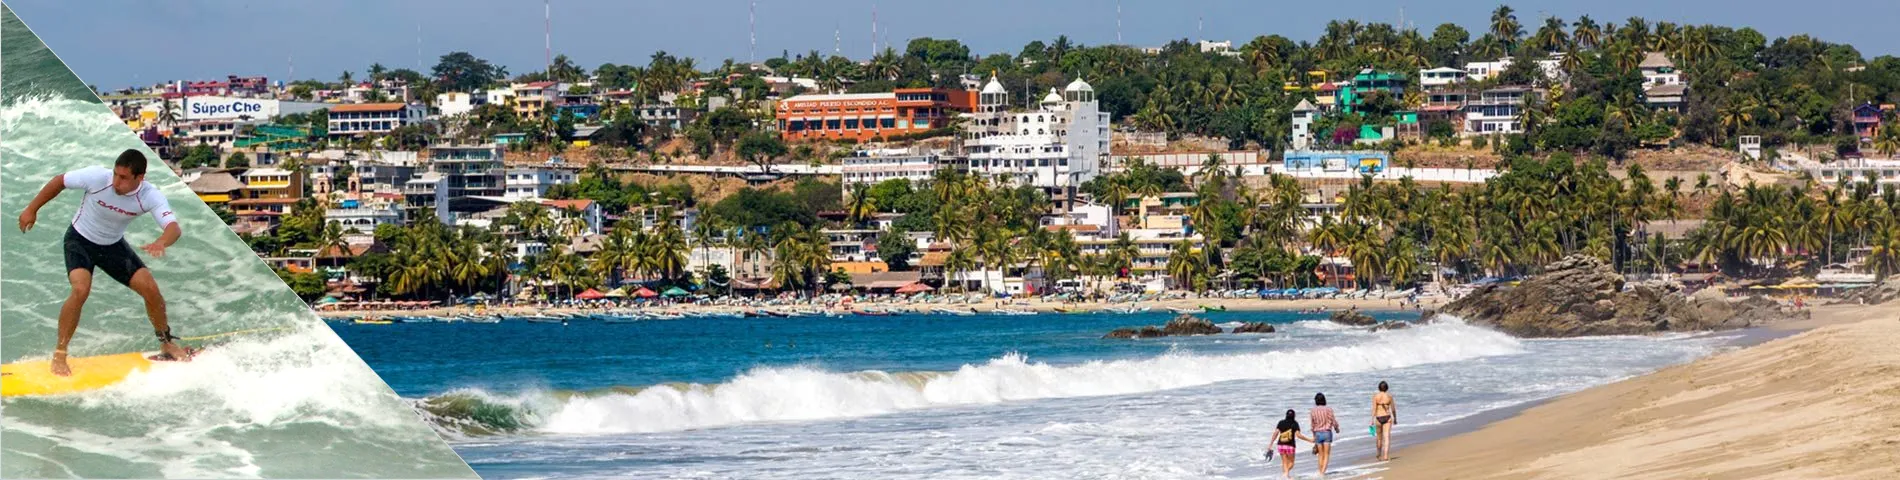 Puerto Escondido - Spanisch & Surfen